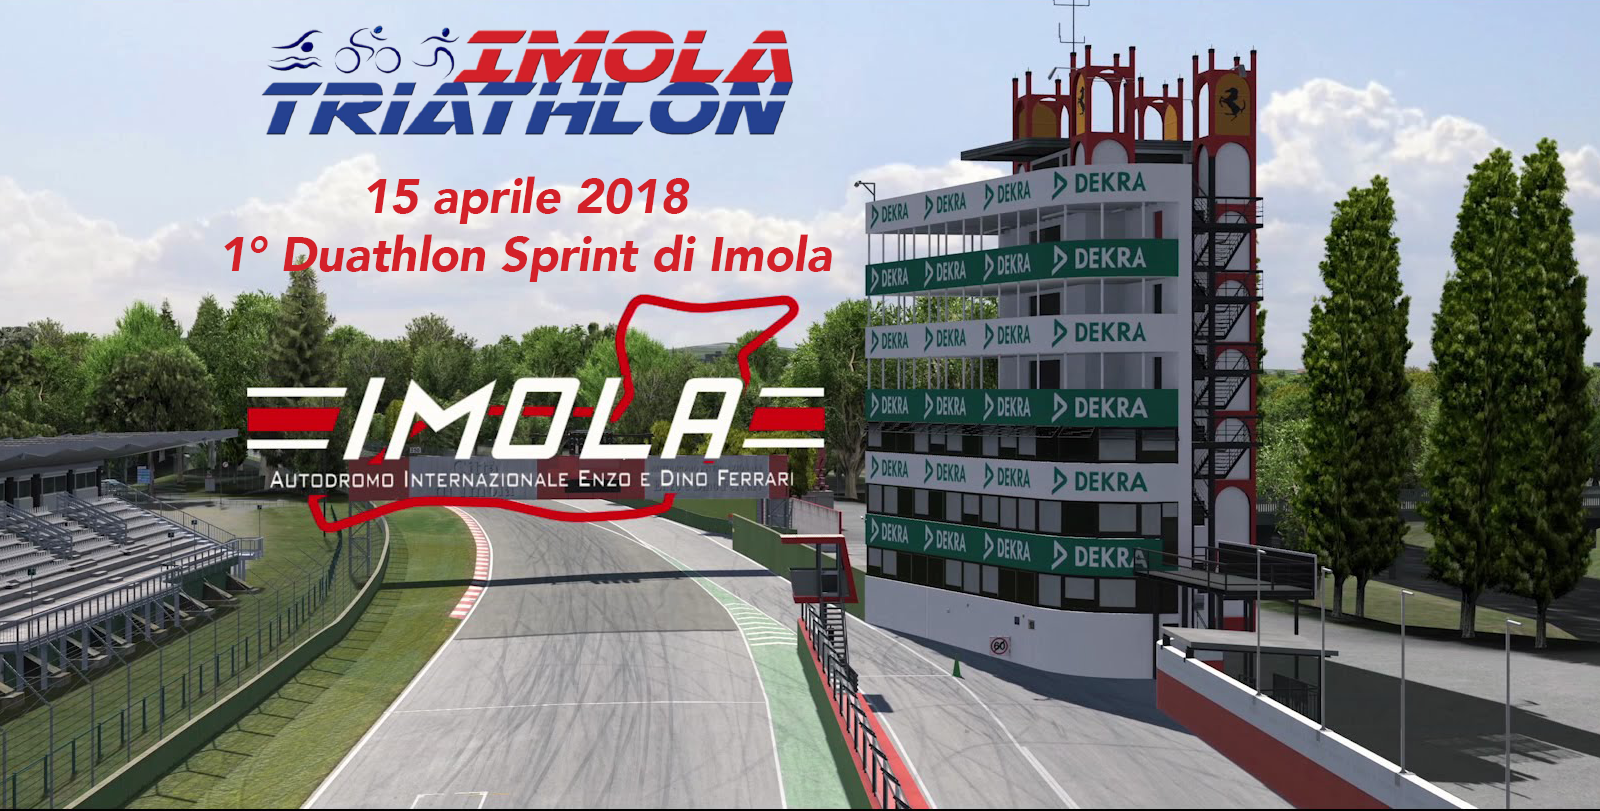 Duathlon Sprint di Imola, presentata la prima edizione